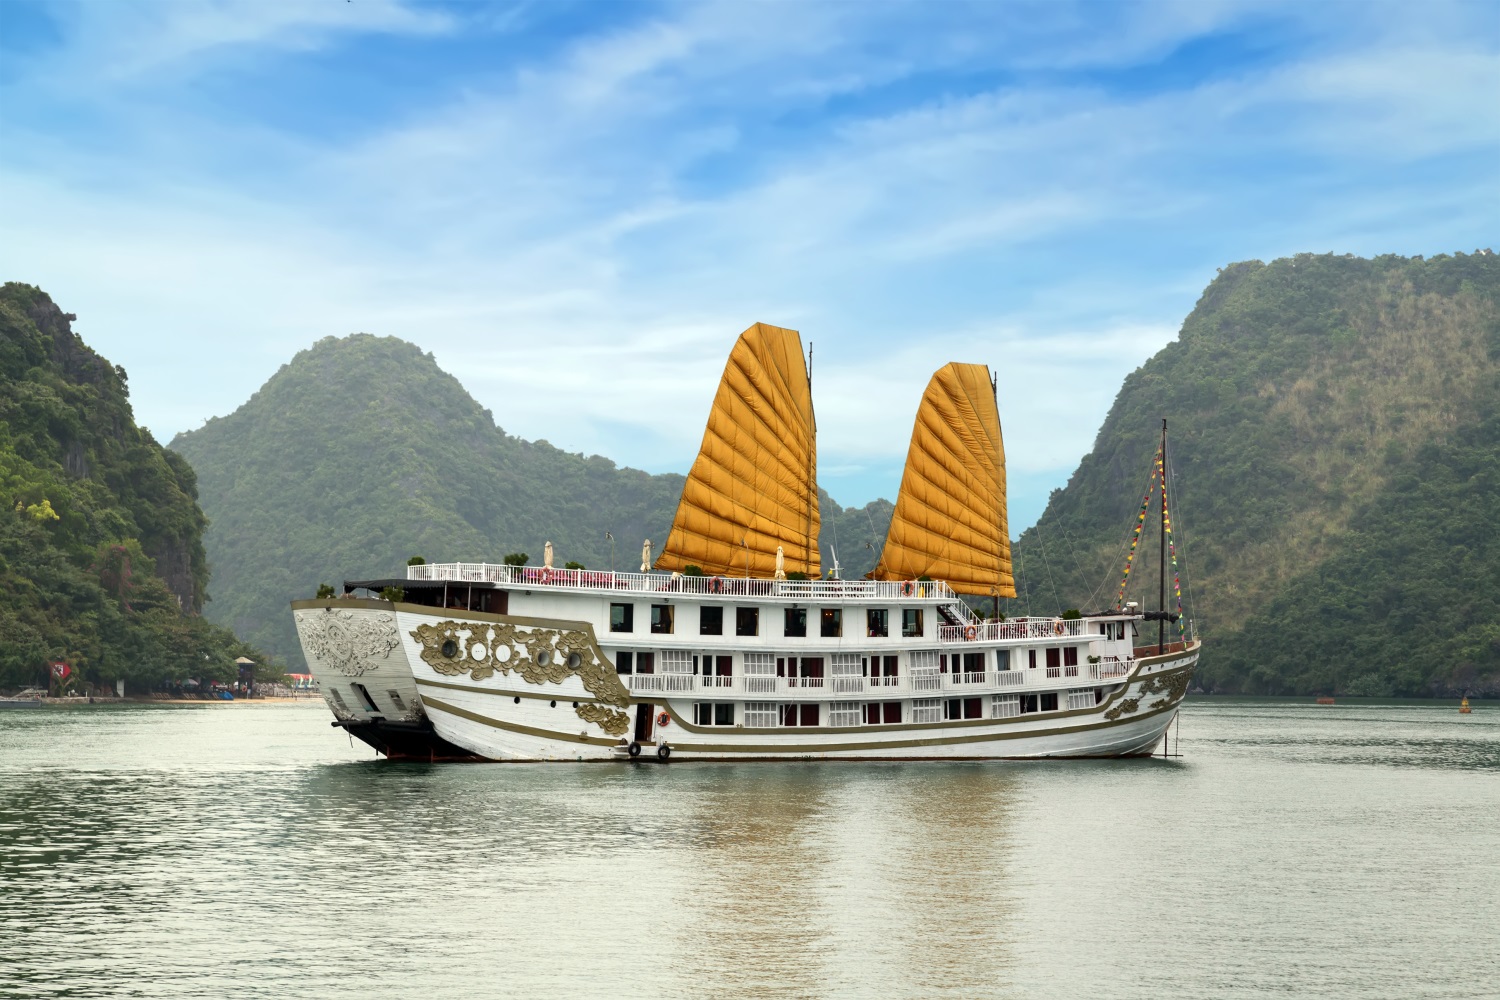 A Halong Bay cruise ship